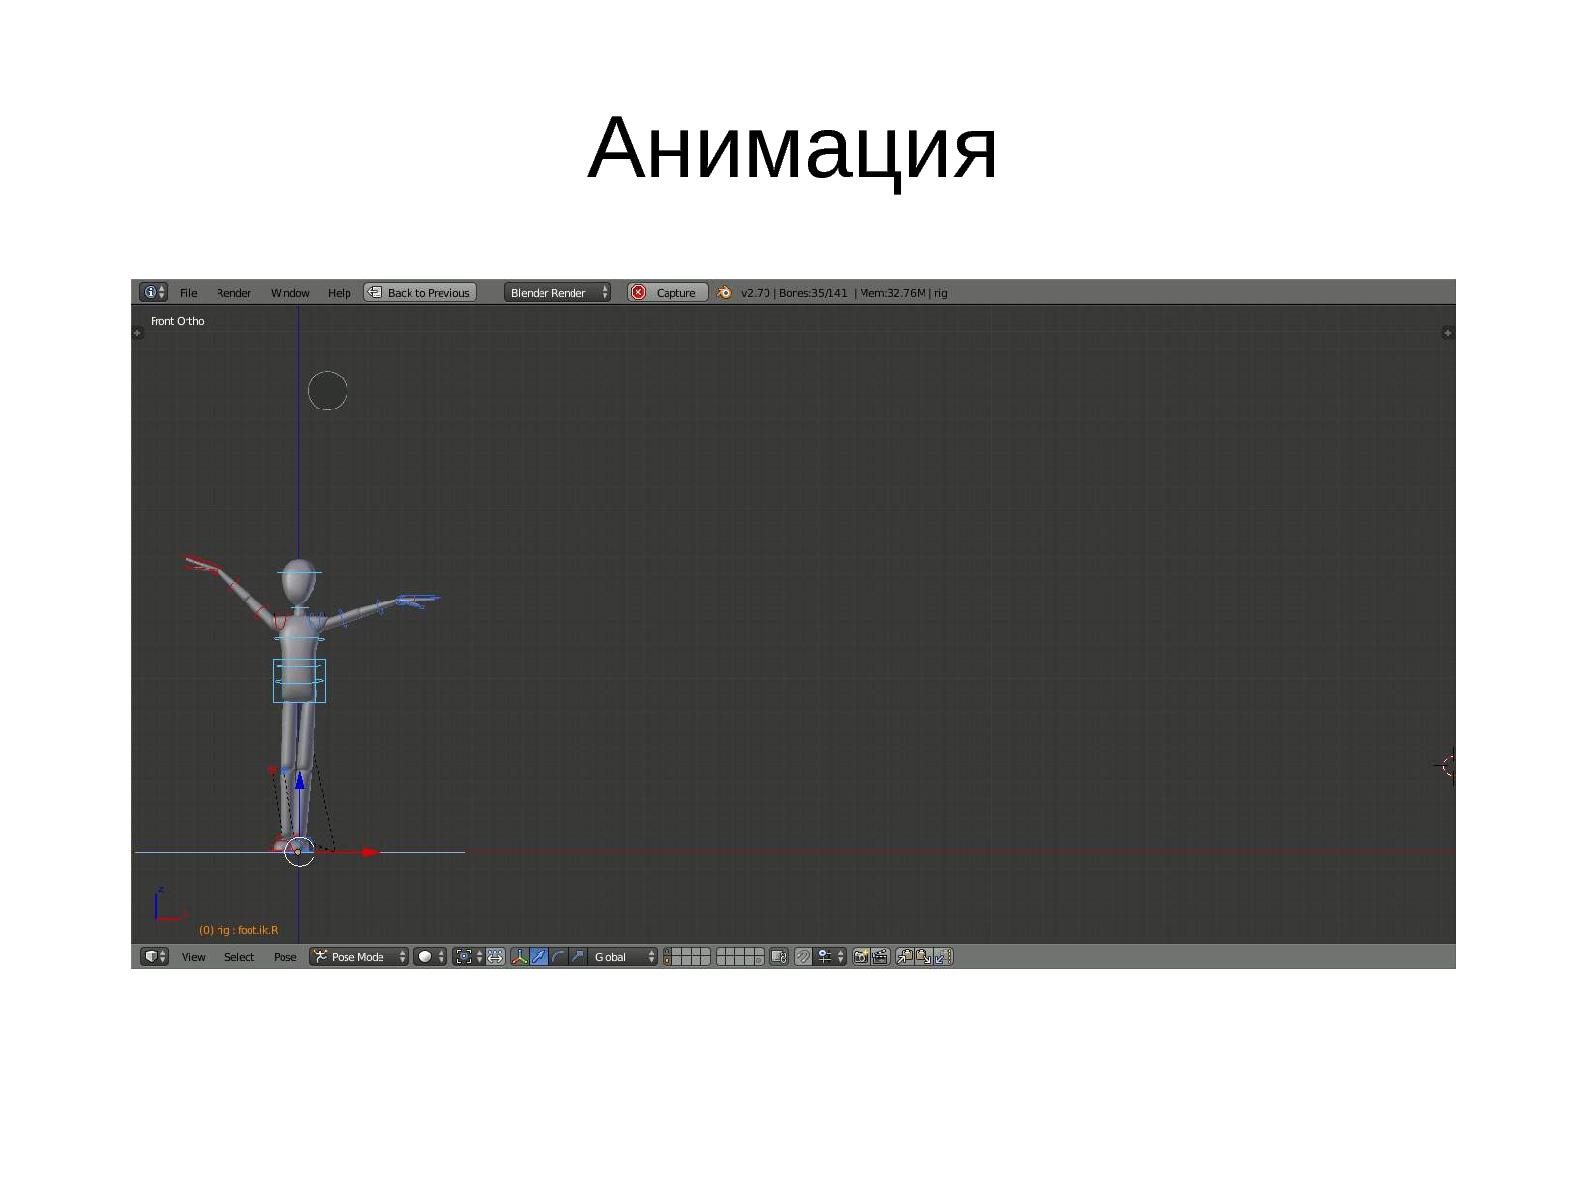 Файл:Создание 3D мультфильма средствами СПО (Виктория Бабахина, LVEE-2014).pdf